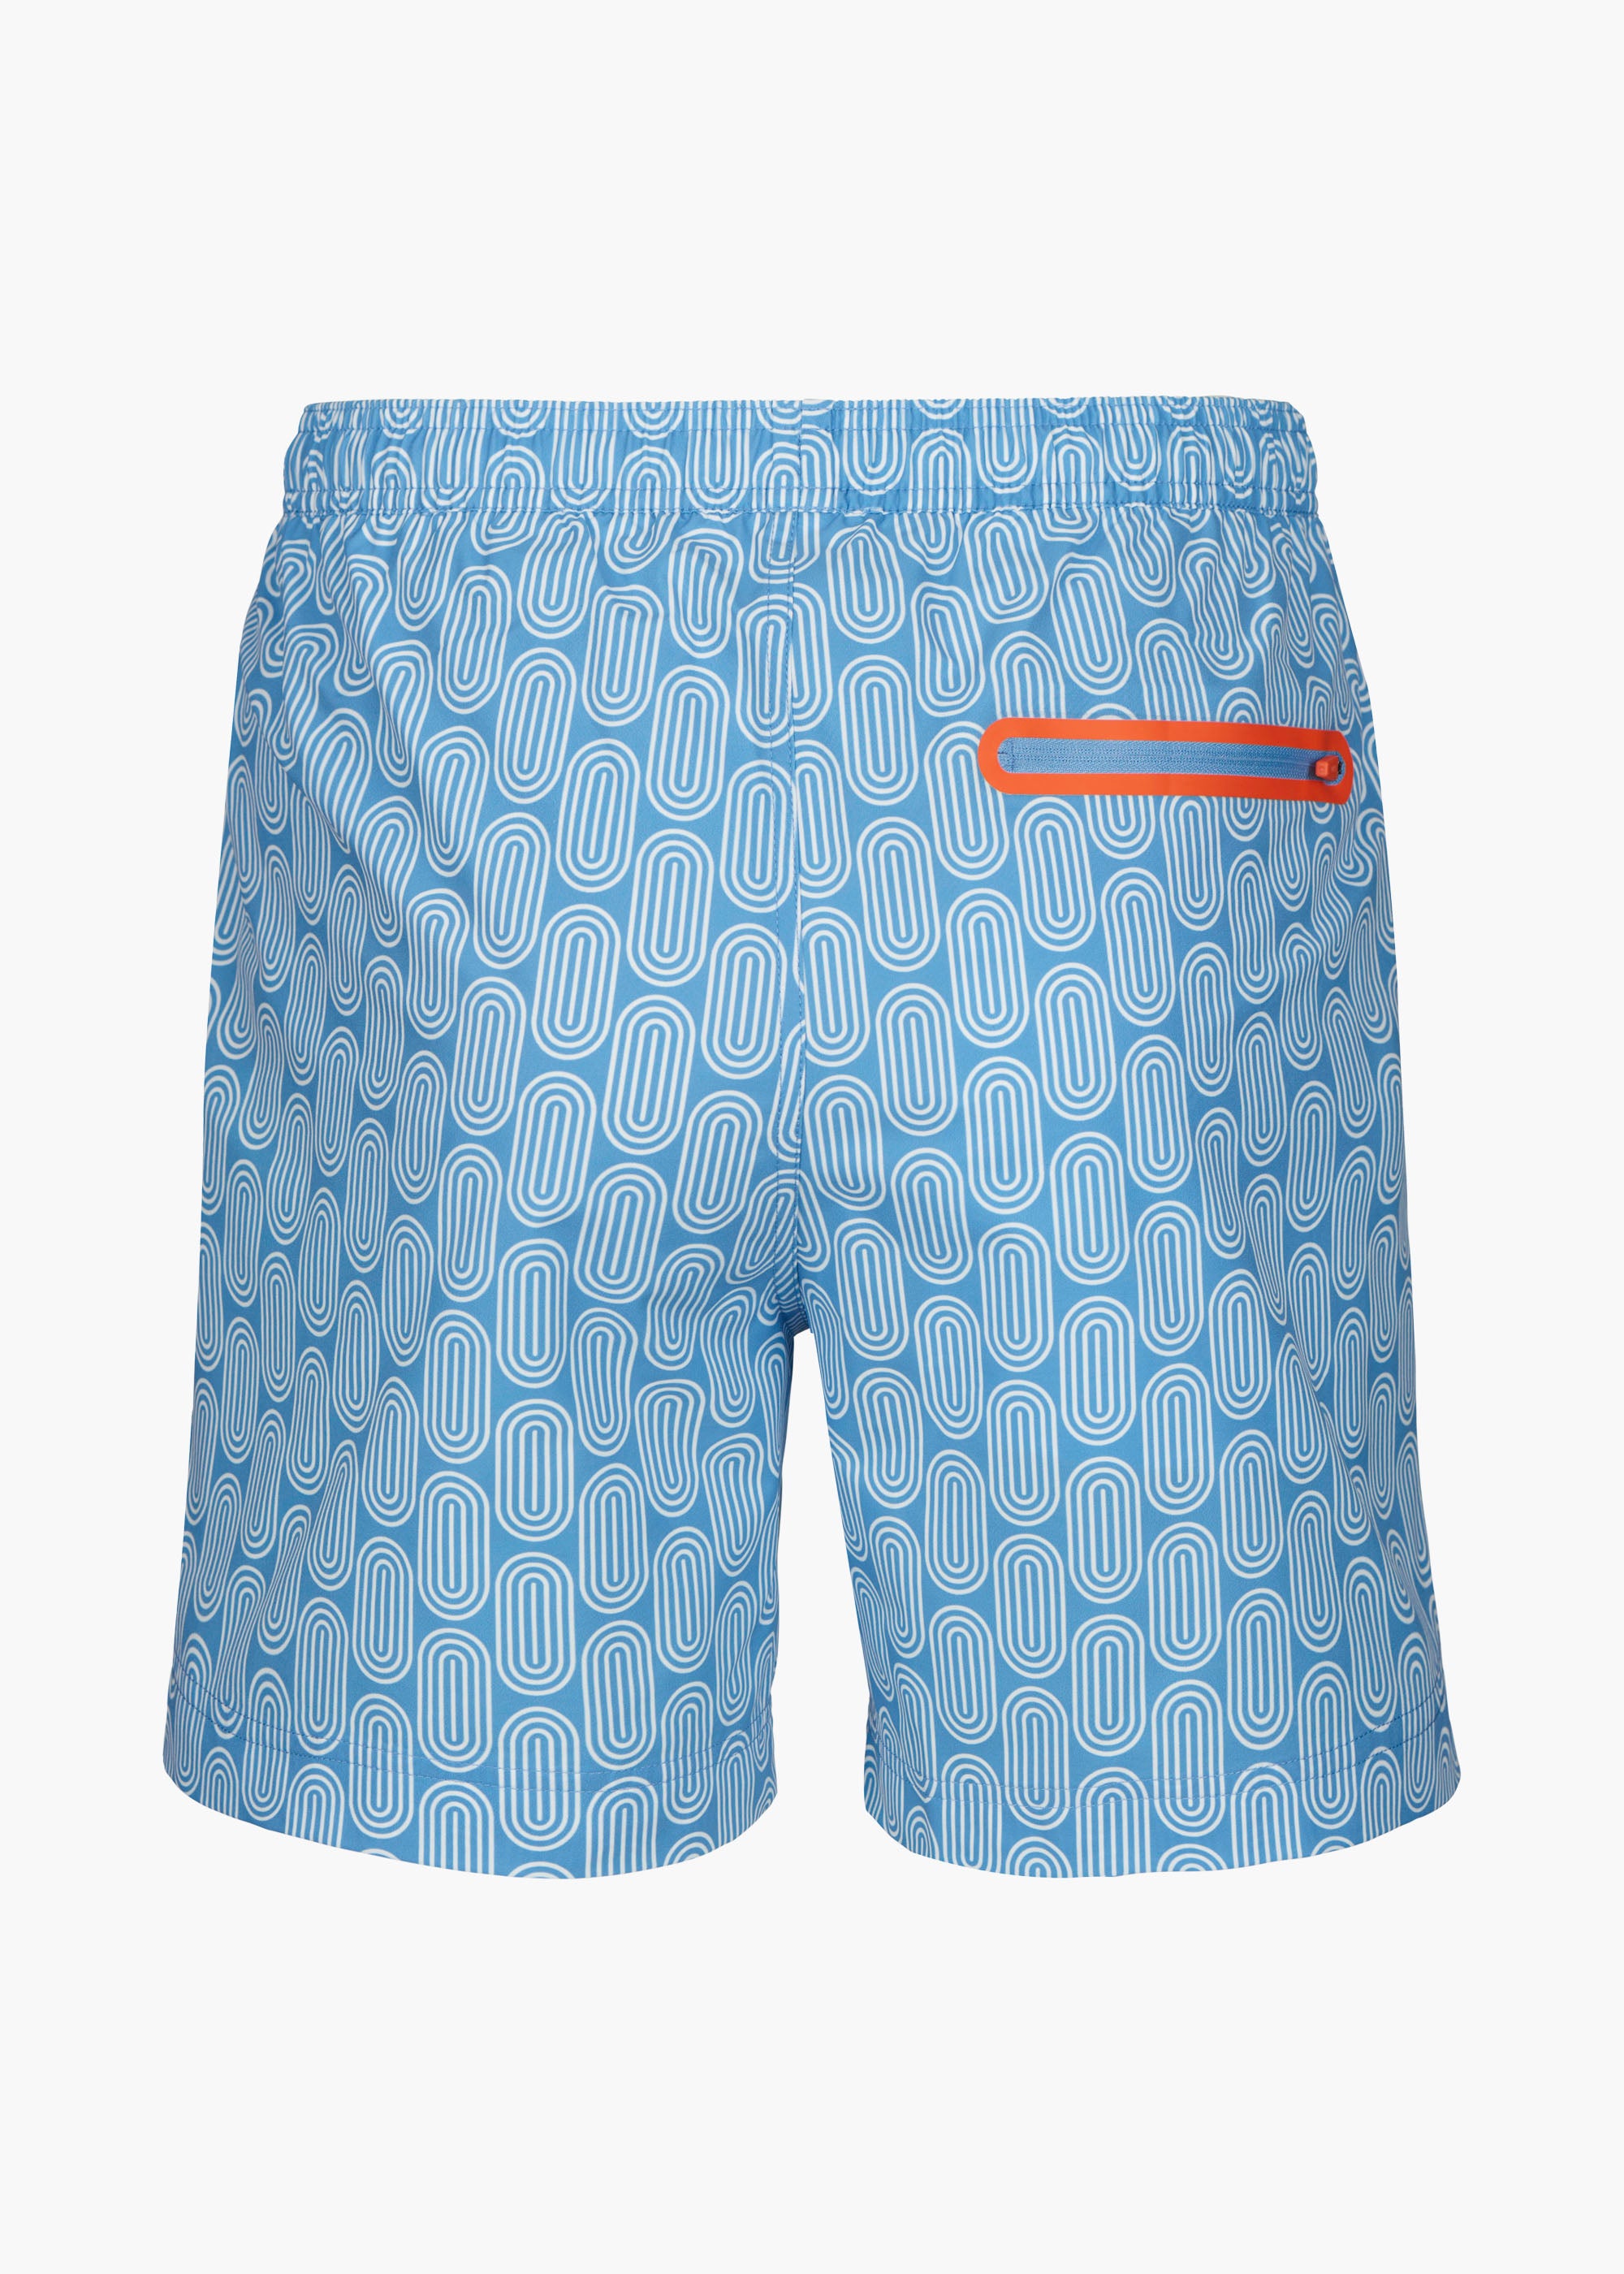 Sol Swim Short (6 ½” Inseam) - background::white,variant::Gia Aegean Blue